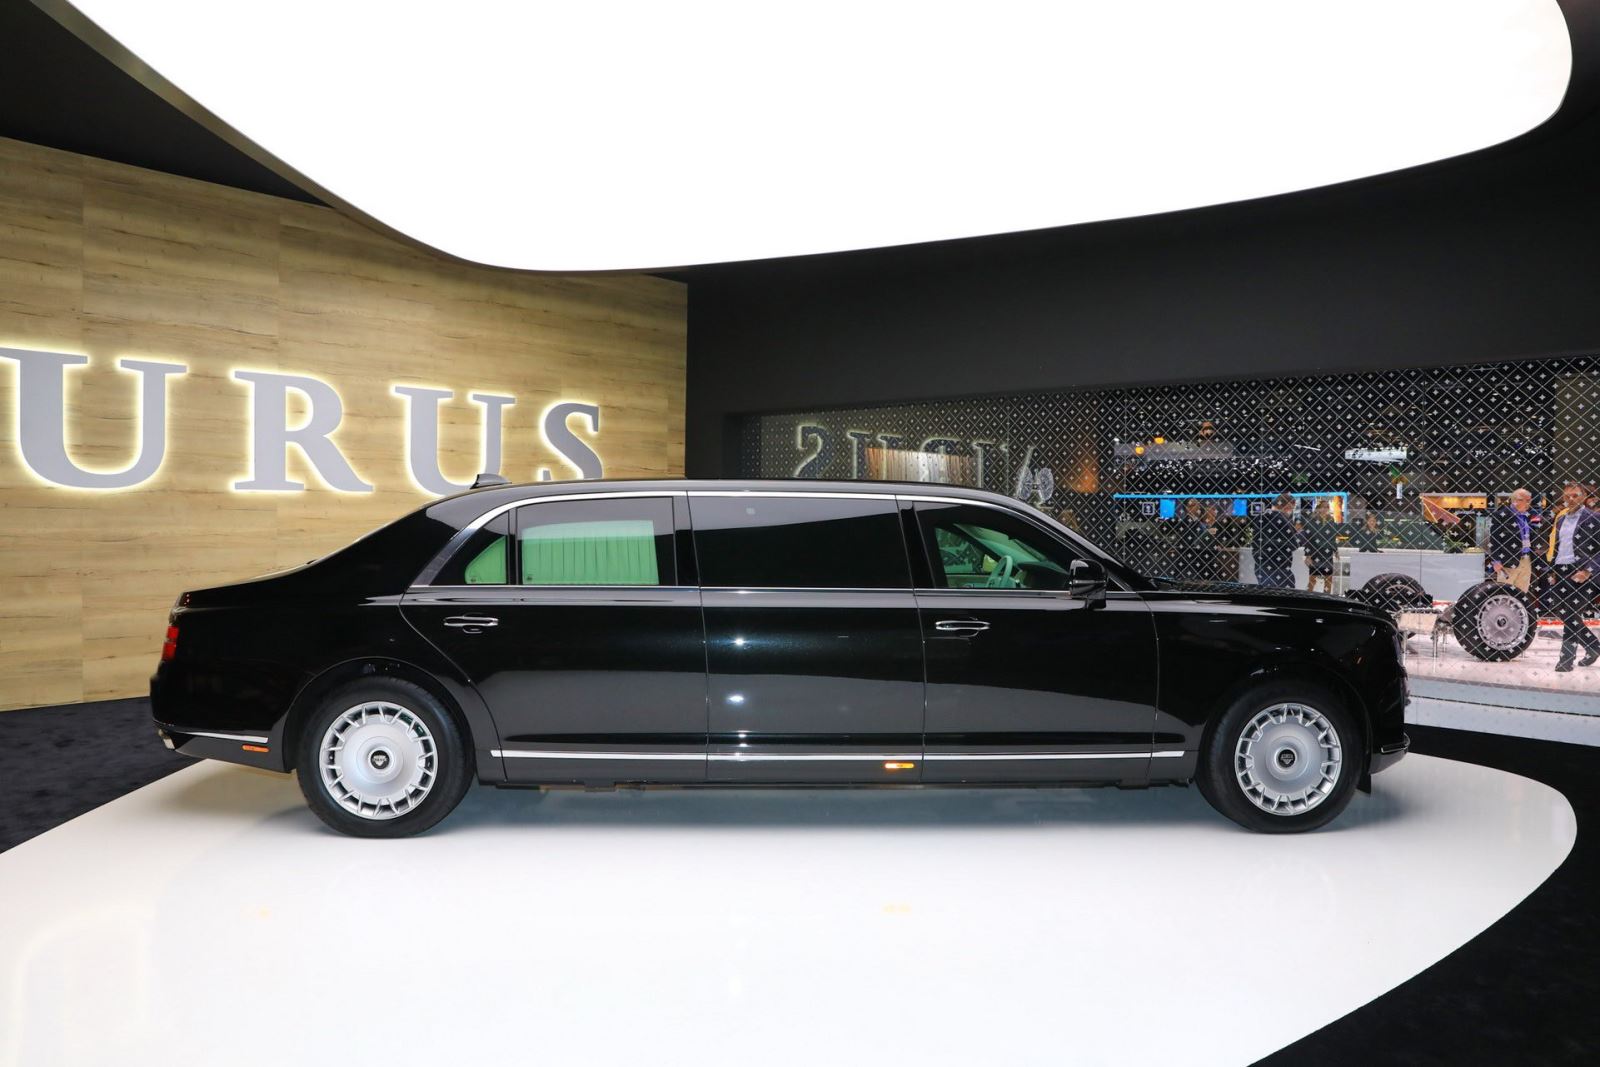 2 mẫu sedan và limousine của Aurus - thương hiệu được mệnh danh là "Rolls-Royce của nước Nga" đã chính thức trình diện khách hàng châu Âu tại triển lãm Geneva và nhận được không ít lời tán dương. Rolls-Royce hay Bentley cũng phải dè chừng. 6